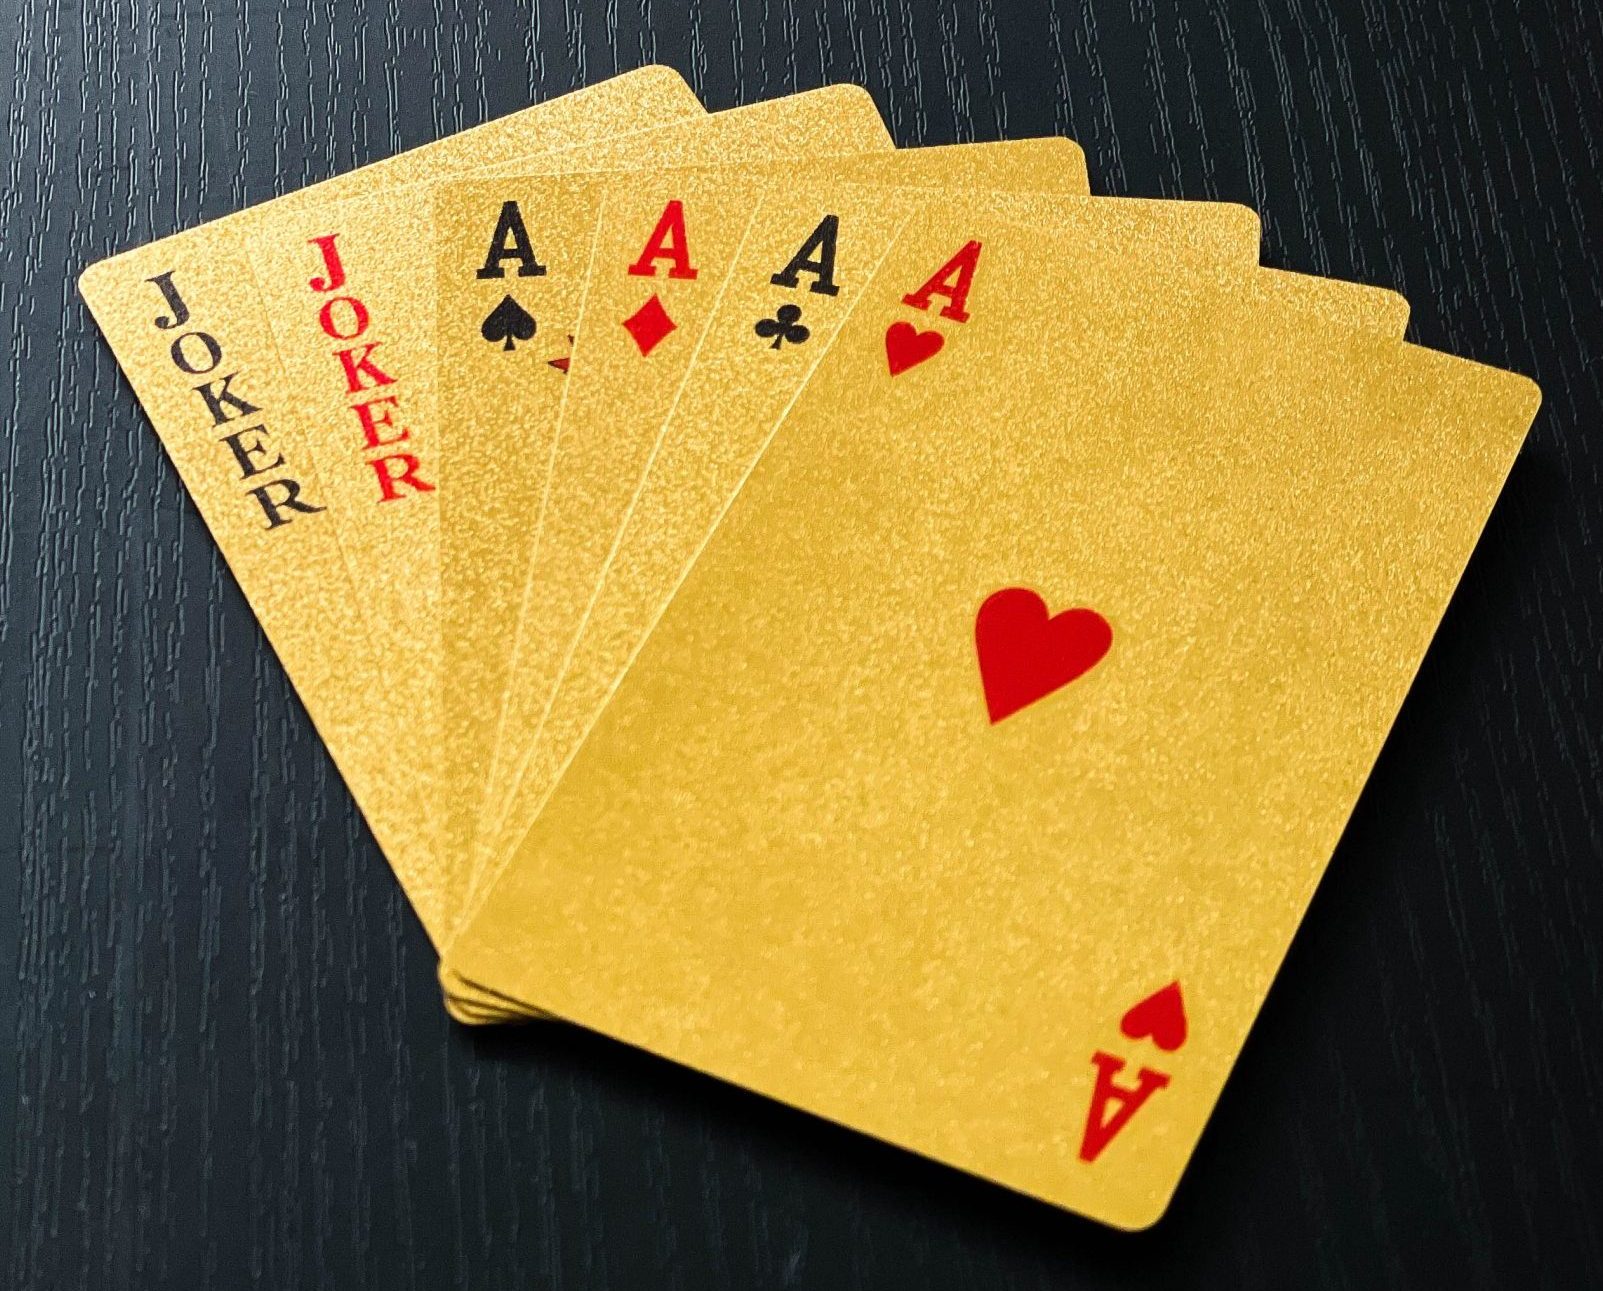 Luxe gouden speelkaarten Perfect poker & andere spellen - Luxe